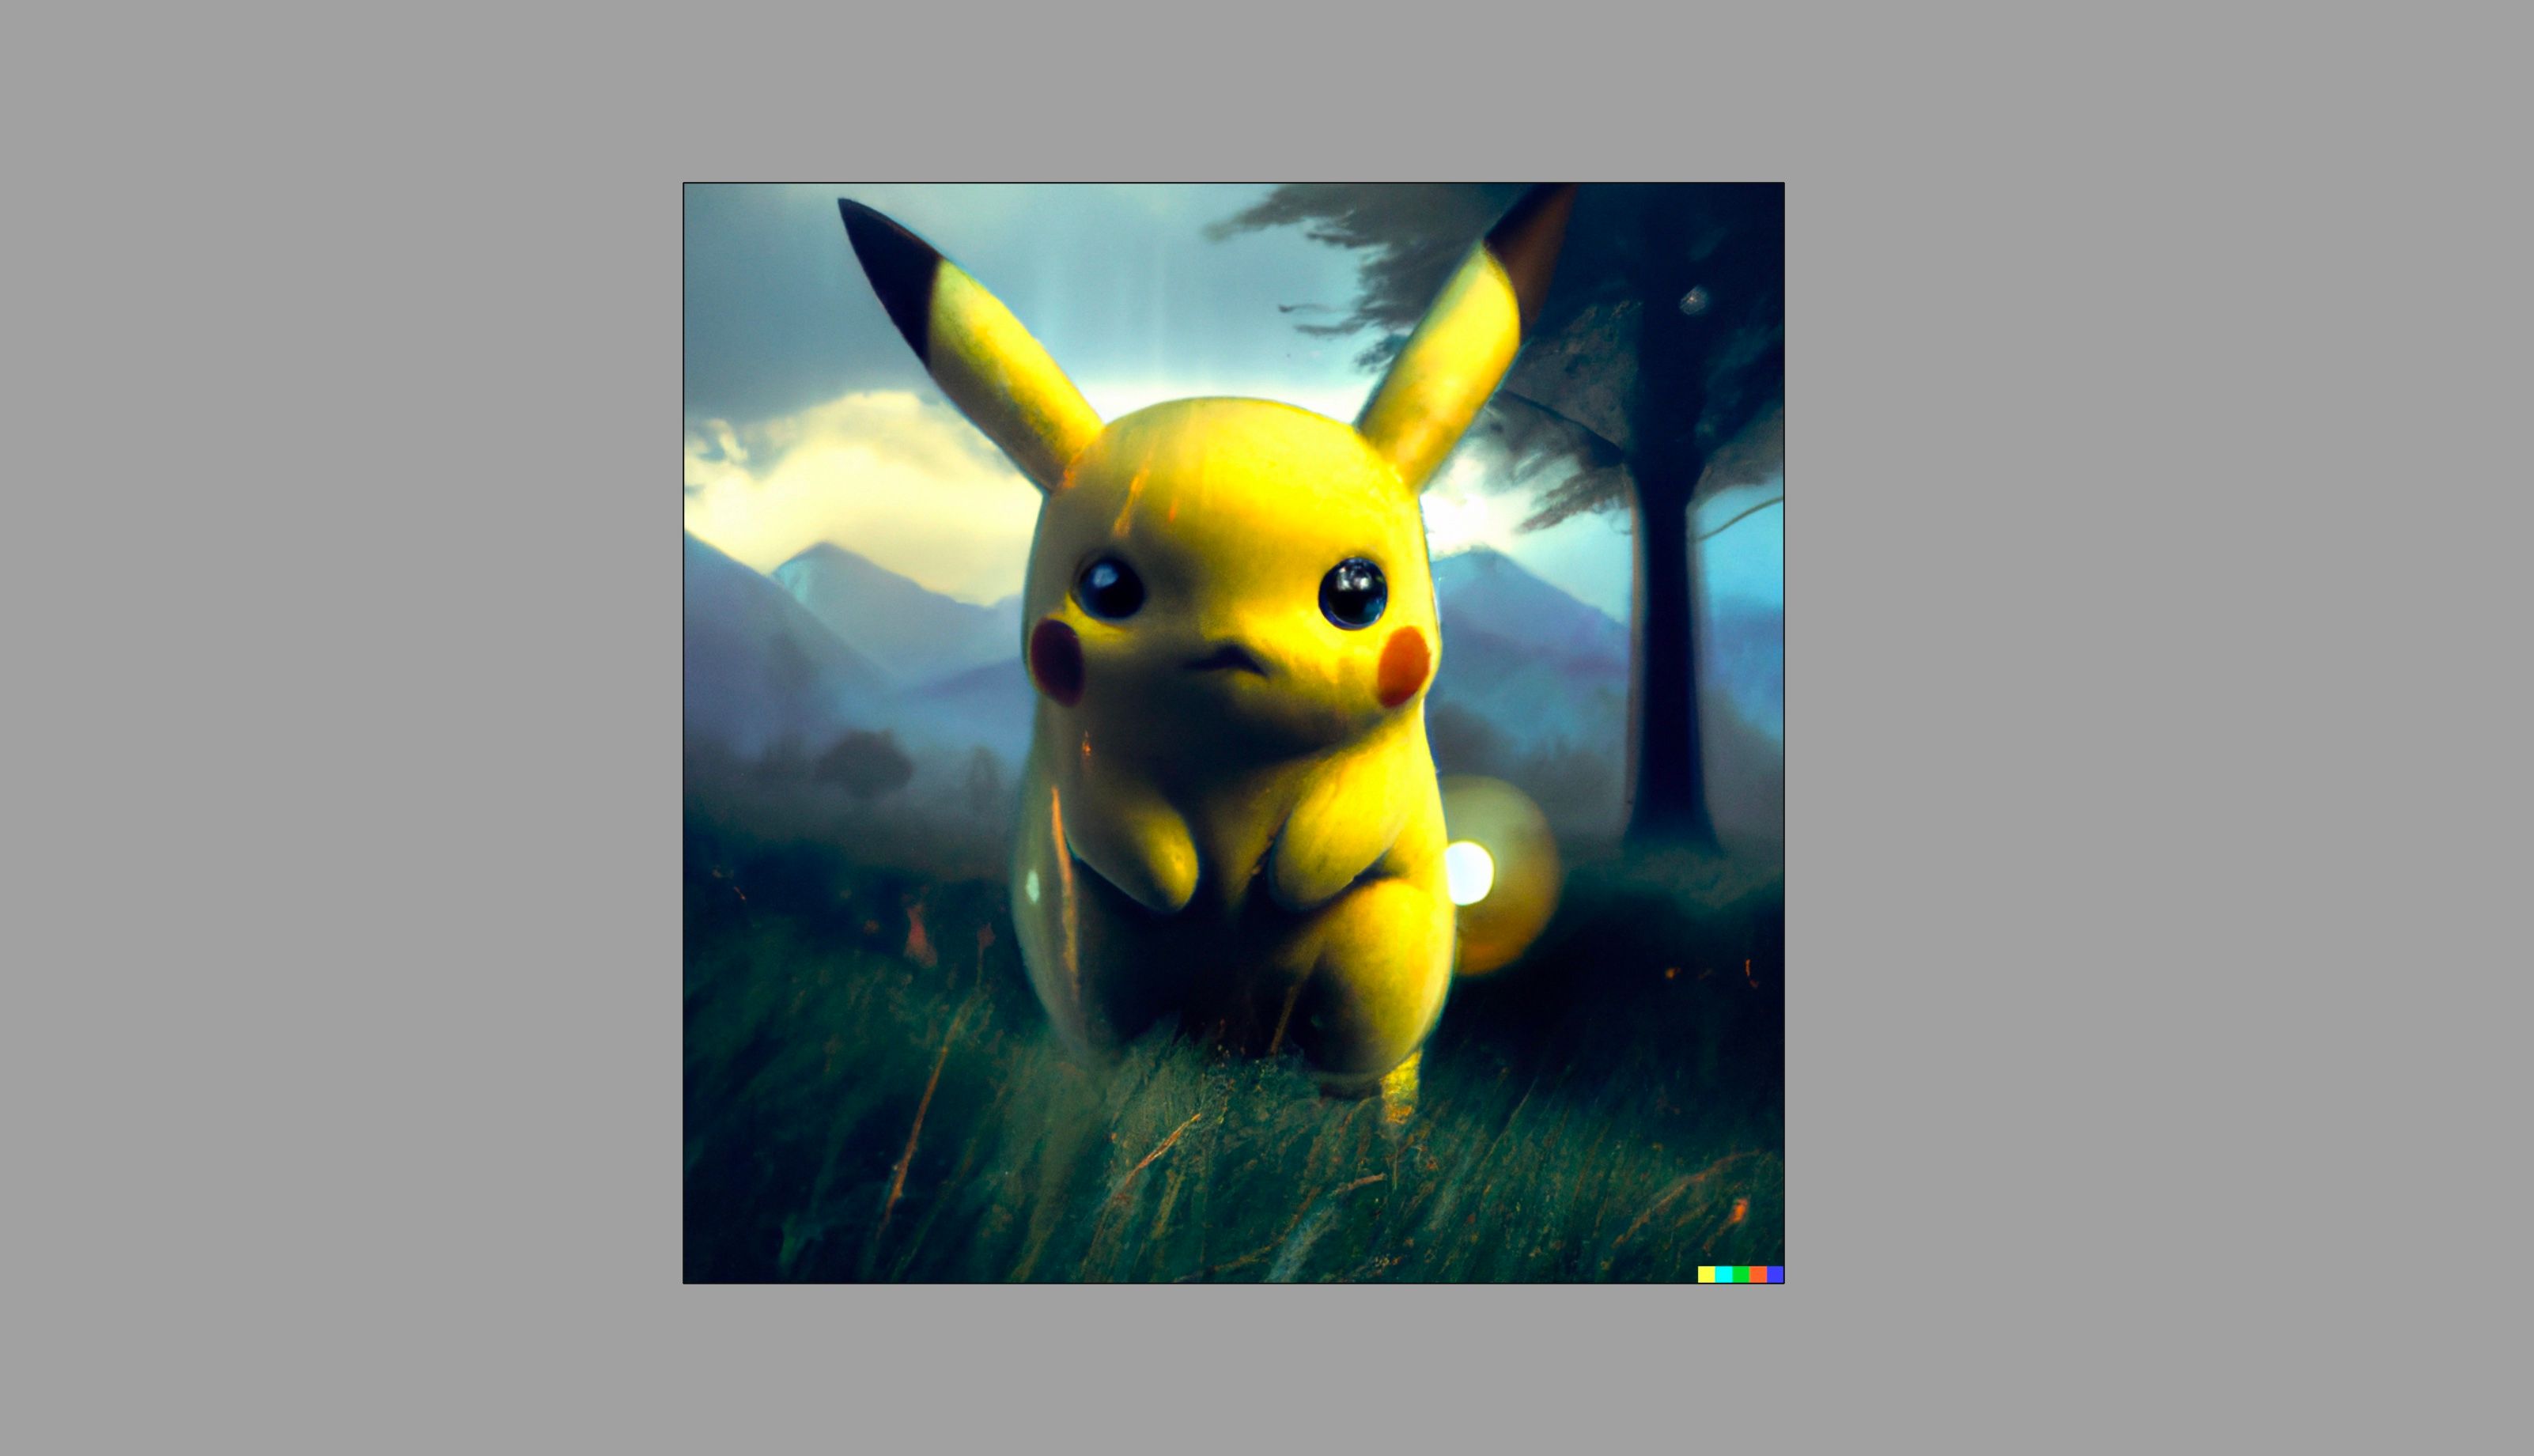 Arte digital do Pikachu gerada com Dall-E